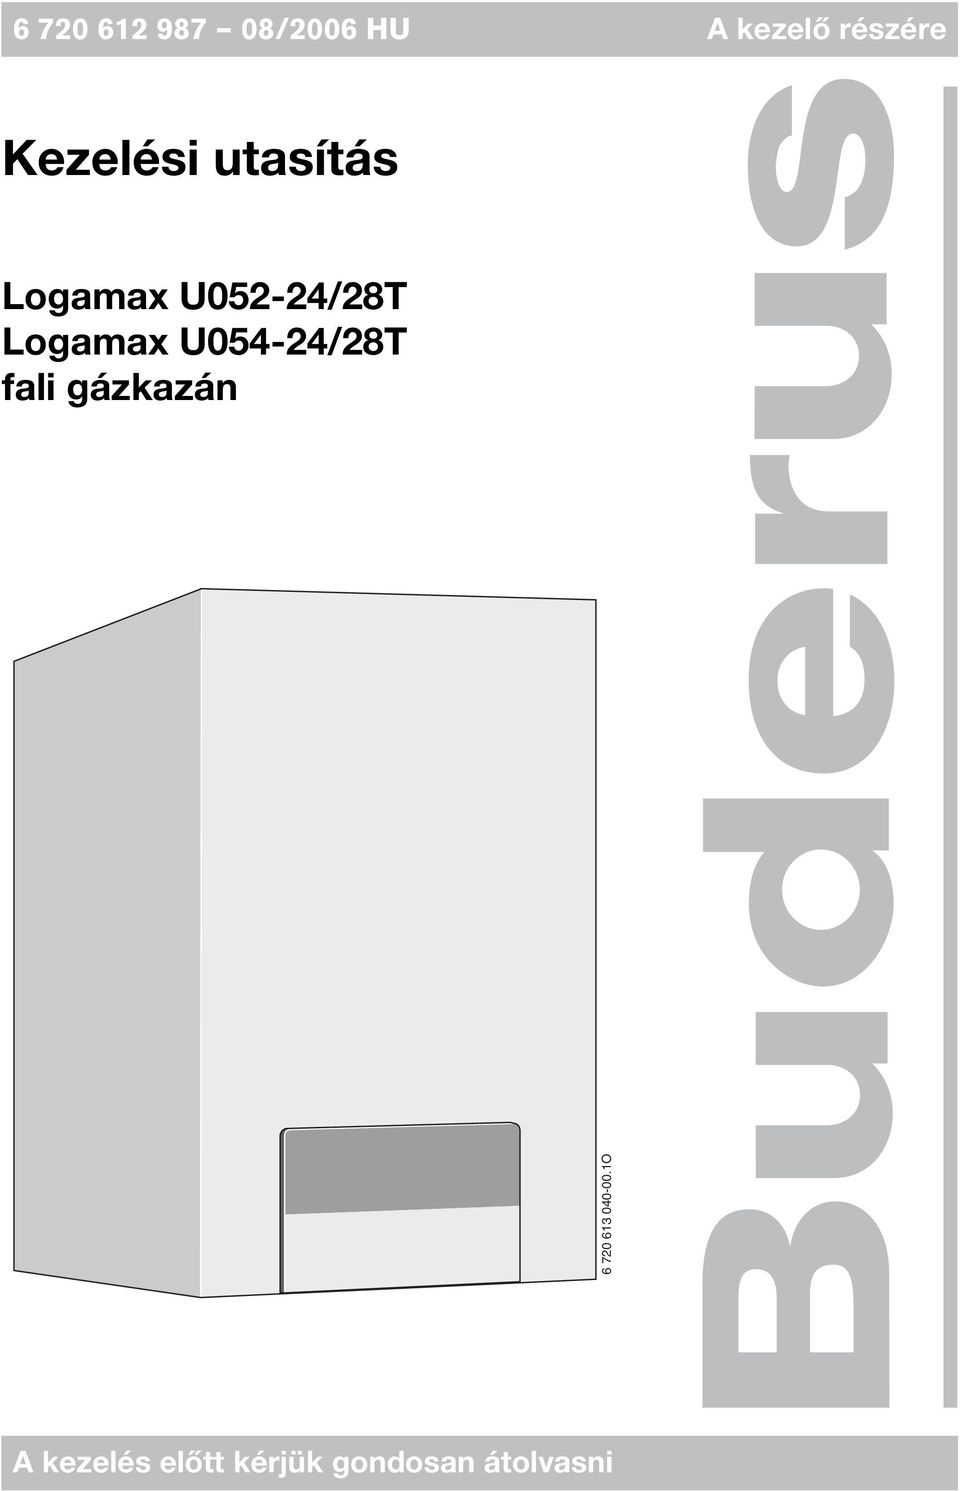 Logamax U054-24/28T fali gázkazán 6 720 613